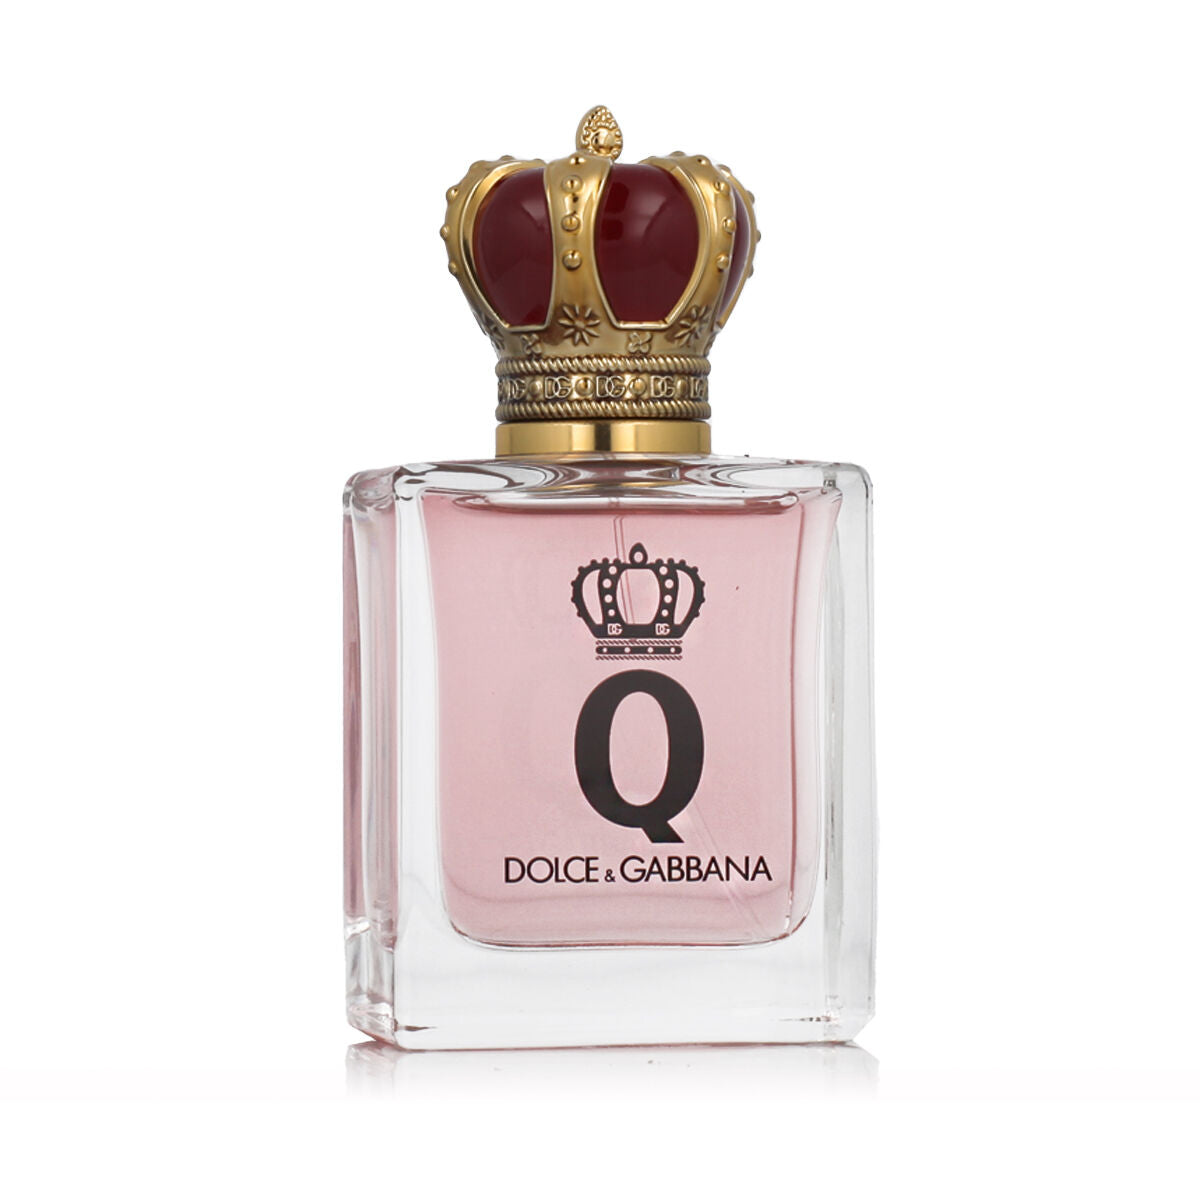 Damesparfum Dolce & Gabbana EDP Q by Dolce & Gabbana 50 ml